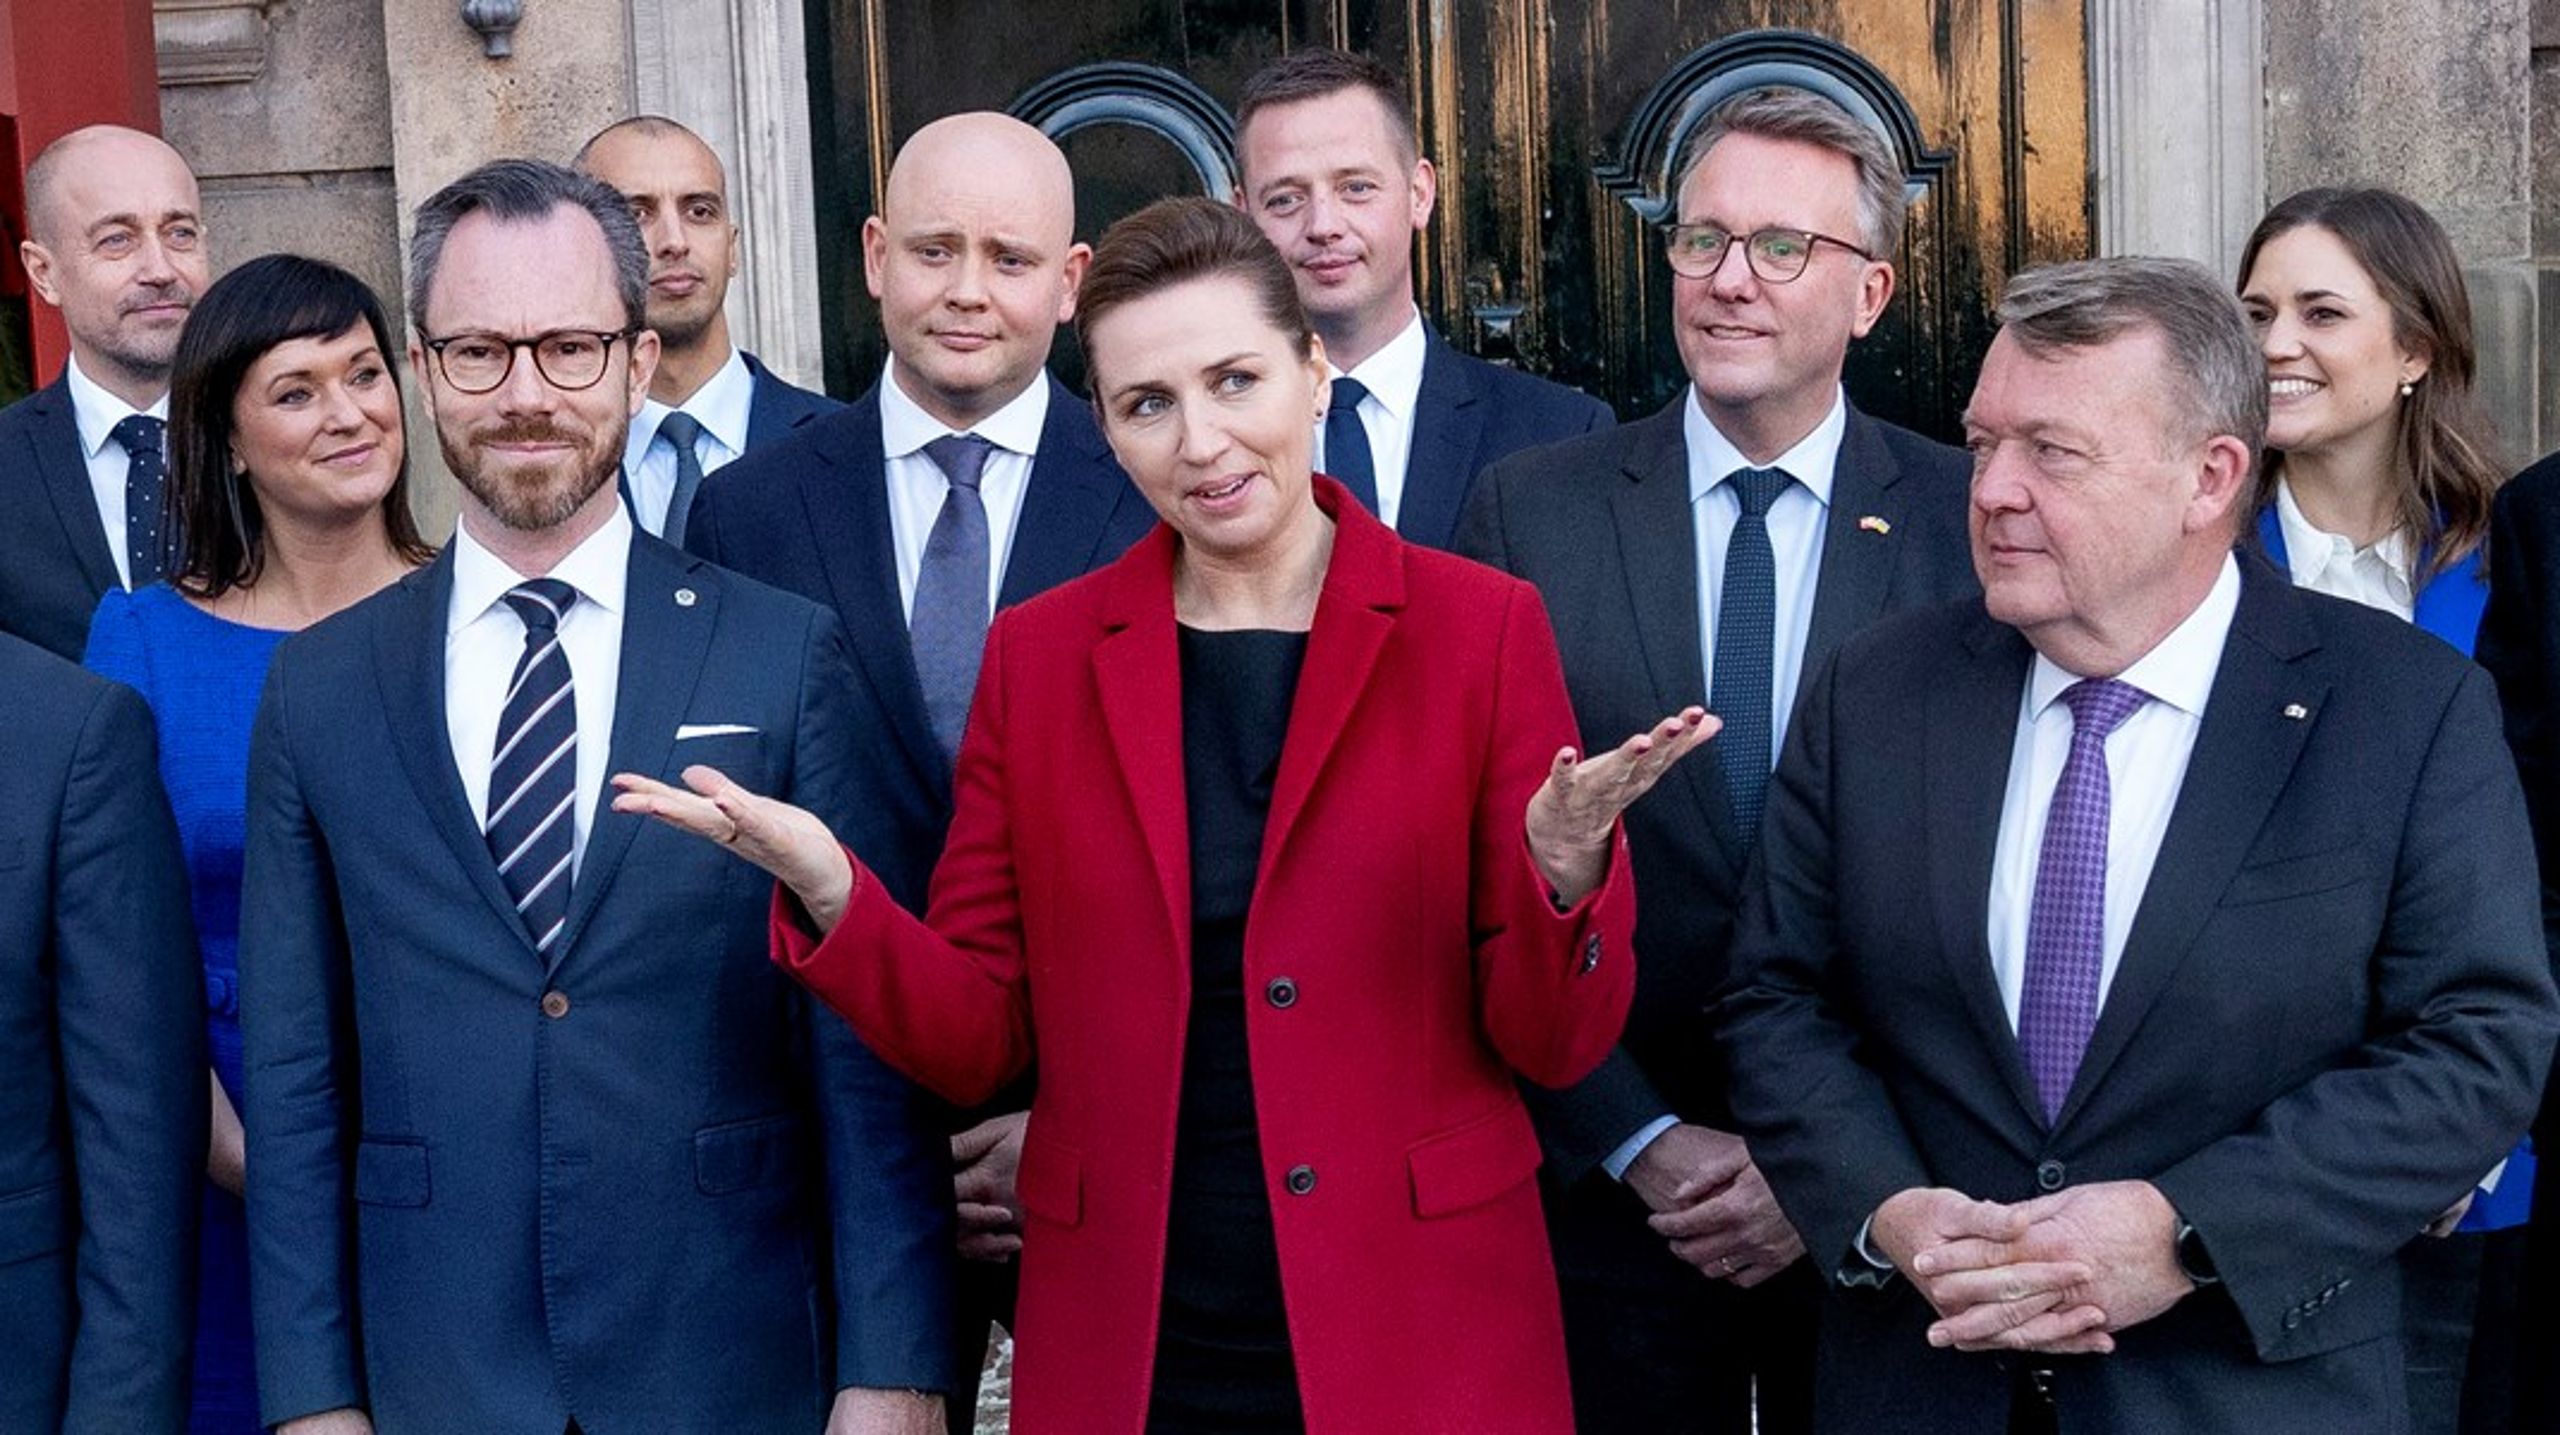 De fremtidige midtvejsvalg kan blive skæbnens time for det nuværende status quo i dansk politik, skriver John Wagner.